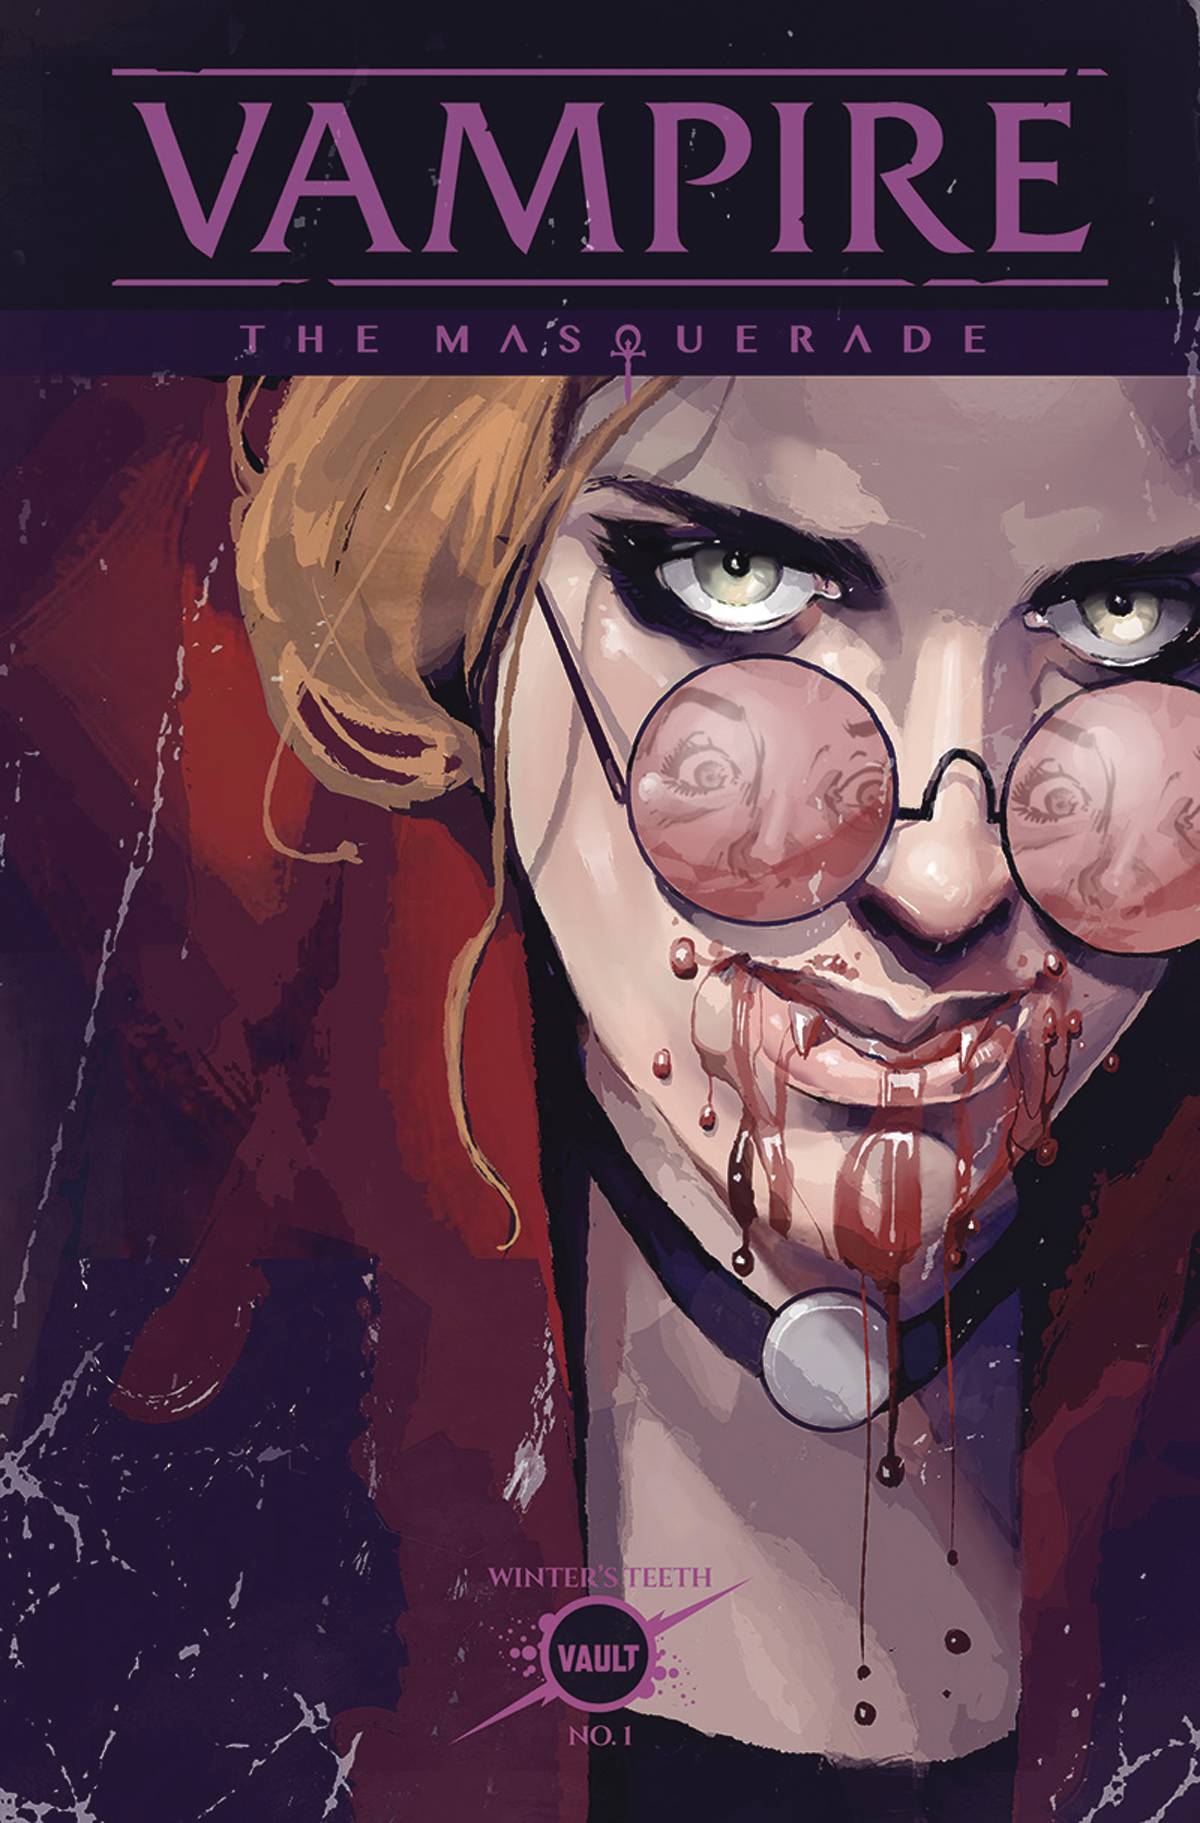 How to run Vampire: The Masquerade #1